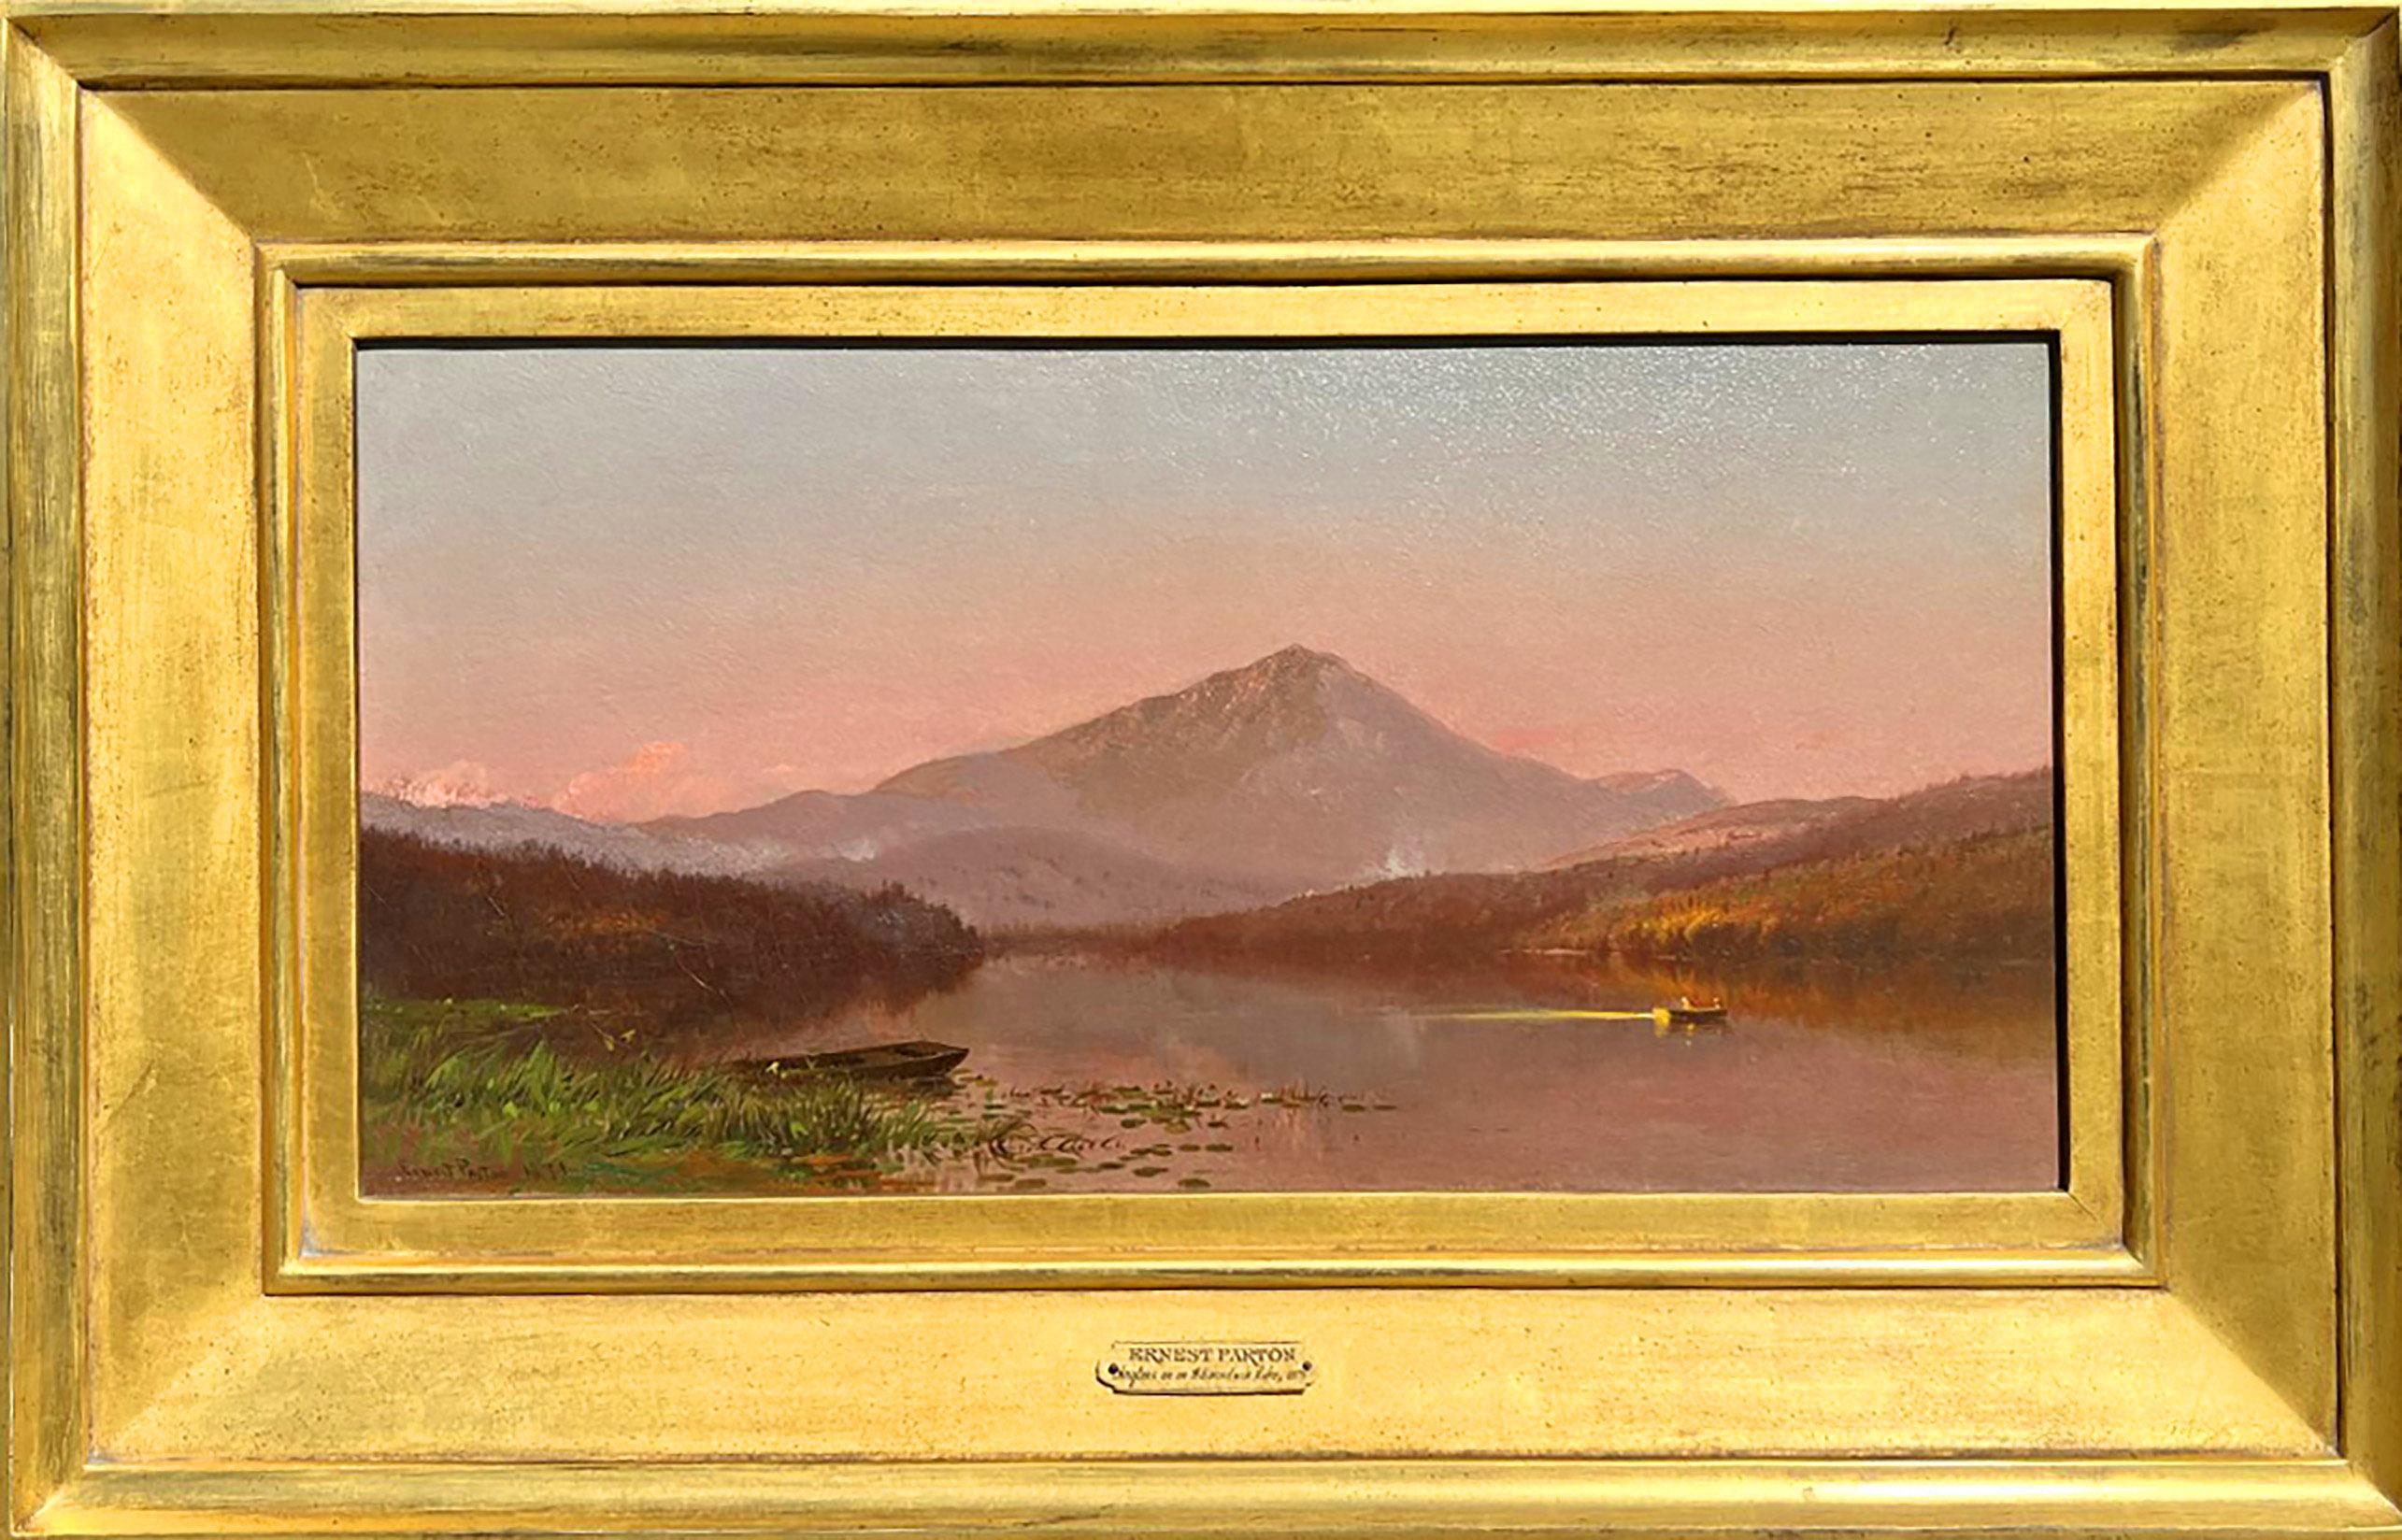 L'œuvre "Anglers on an Adirondack Lake" de l'artiste Ernest Parton (1845-1933) de l'école de la rivière Hudson est une huile sur toile, mesure 10 x 20 pouces, et est signée et datée 1871 en bas à gauche. L'œuvre est encadrée dans un cadre d'époque